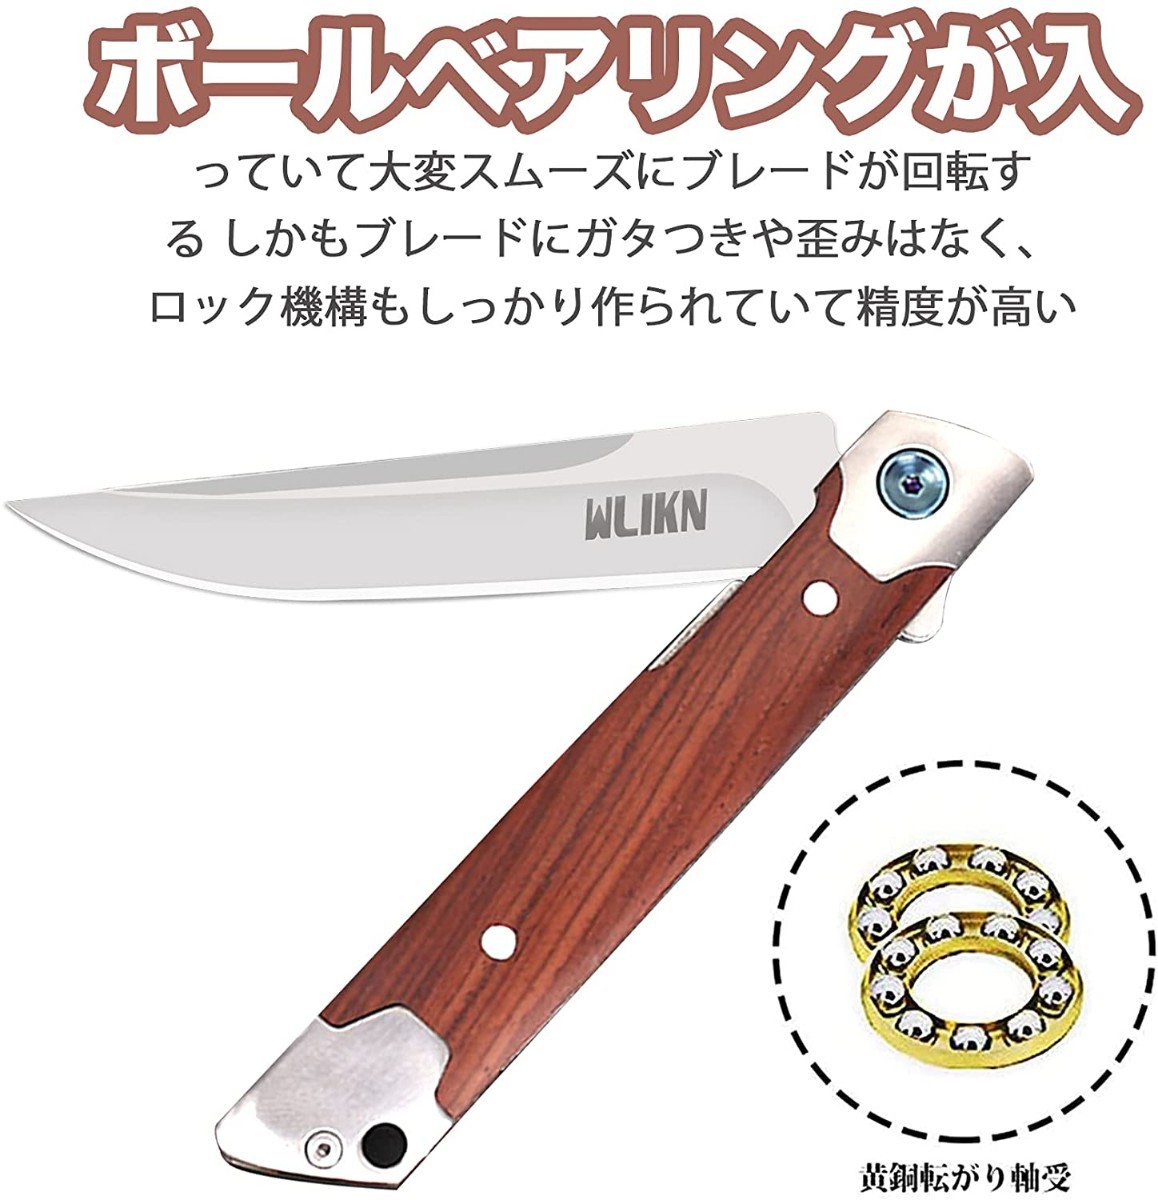 ☆新品☆ フォールディングナイフ 折りたたみナイフ 黄銅転がり軸受 サバイバルナイフ アウトドア ナイフ